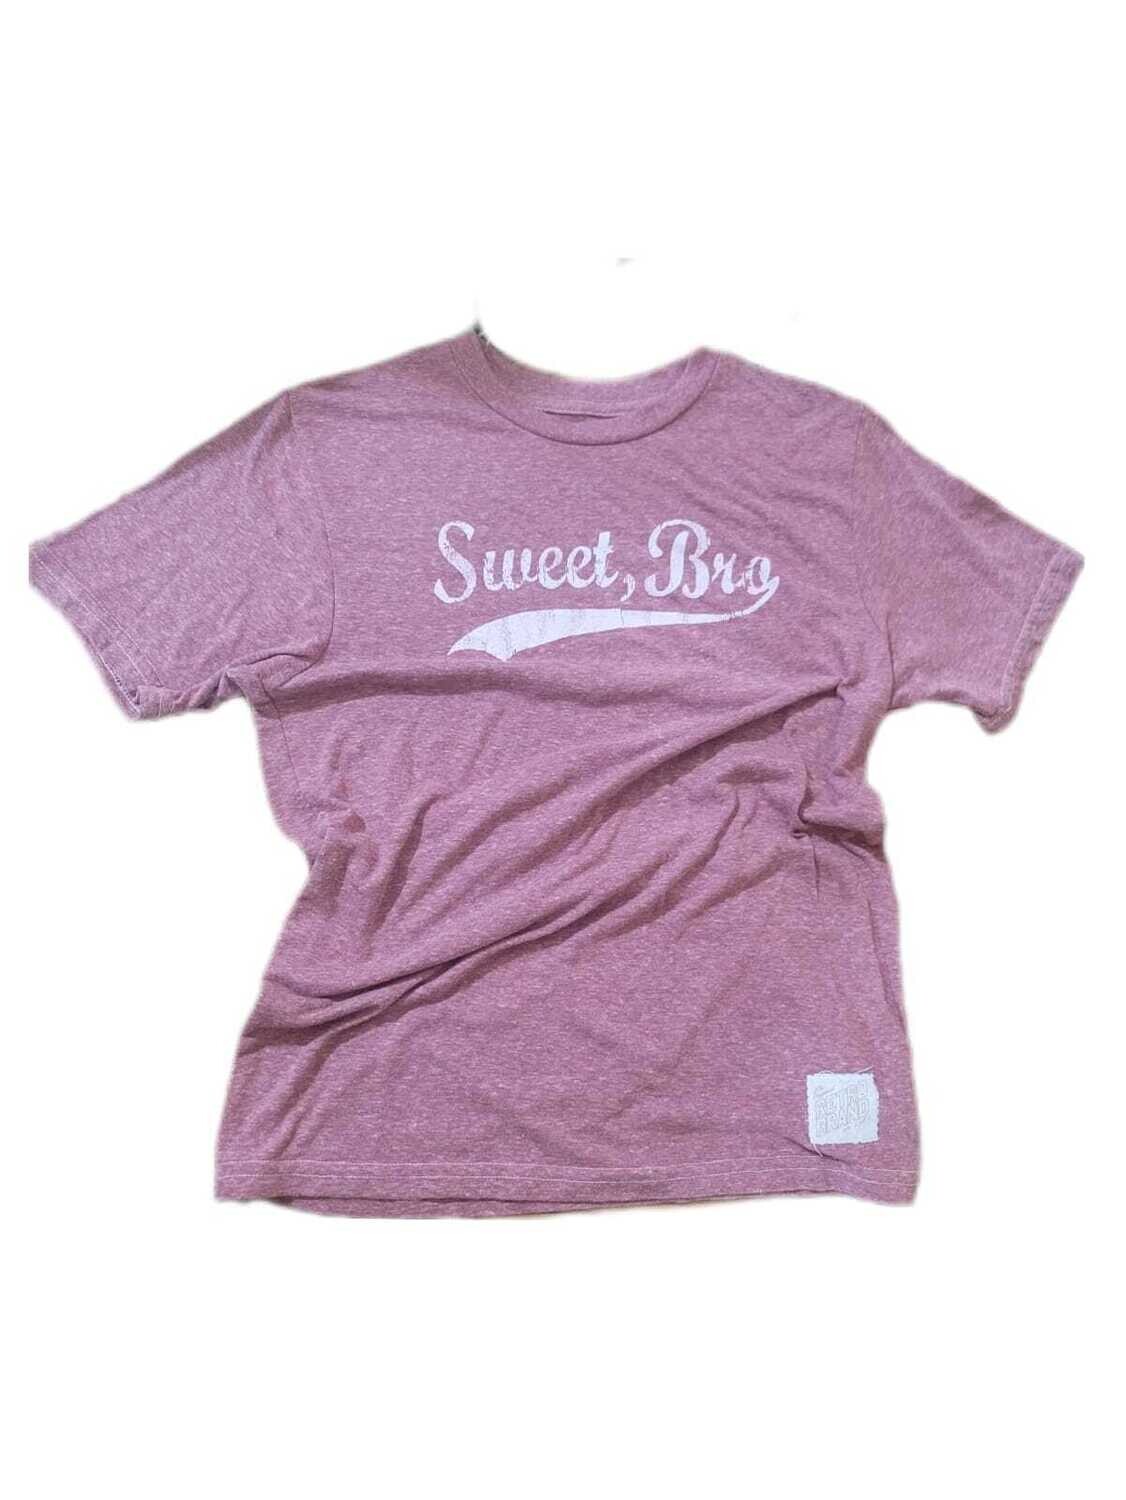 The Original Retro Brand Boys T-Shirt